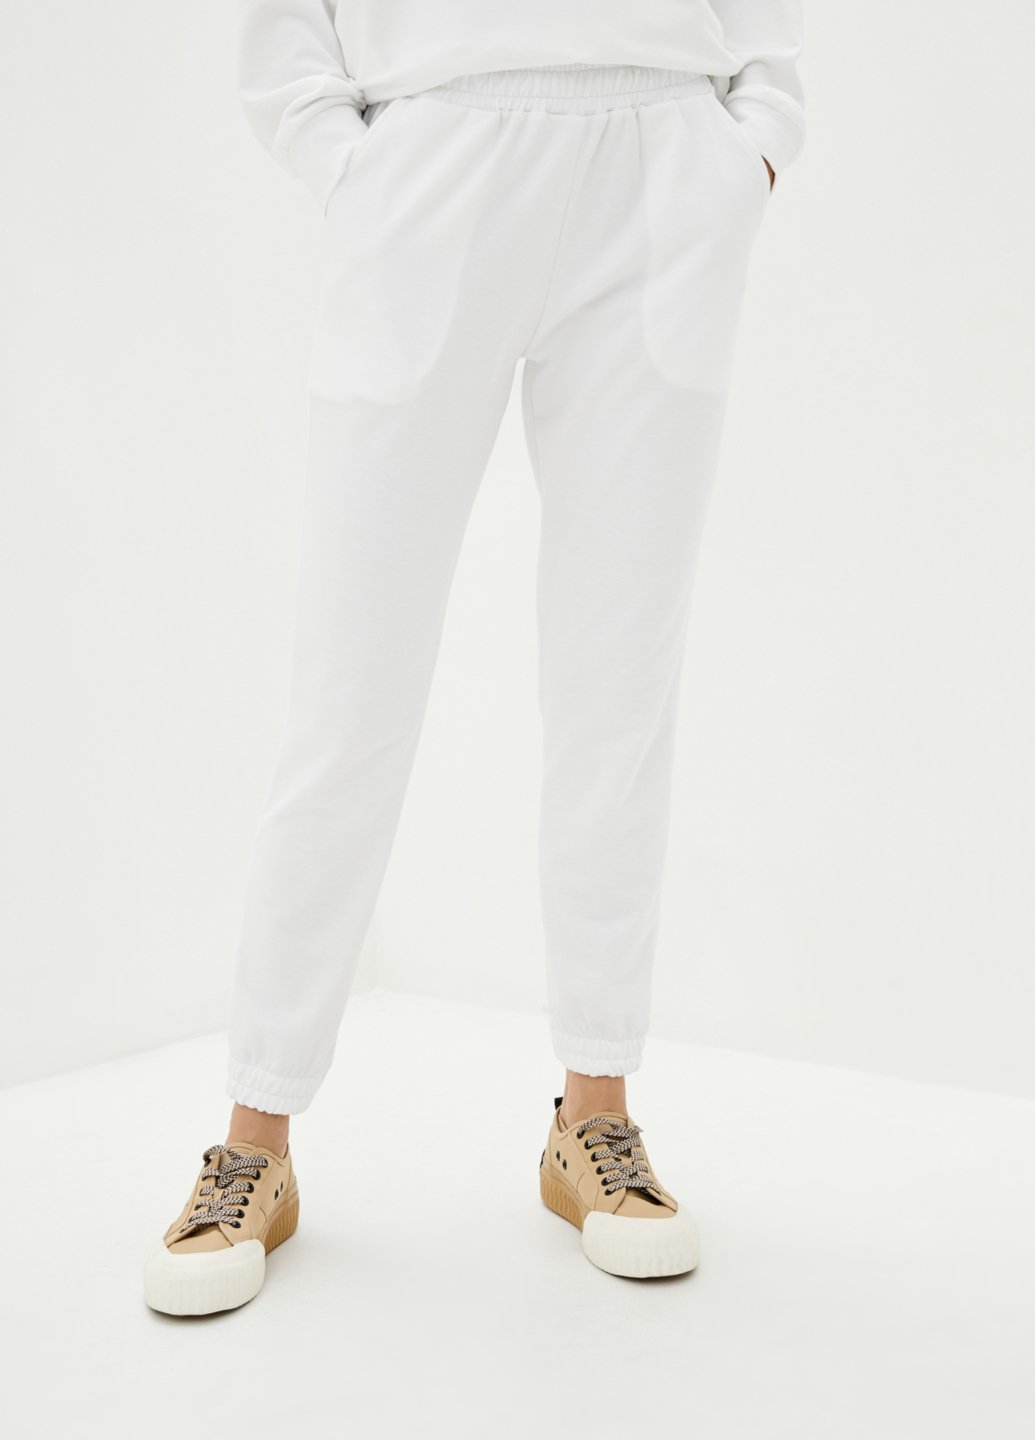 Купить Спортивные штаны женские Merlini Латина 600000013 - Белый, 42-44 в интернет-магазине